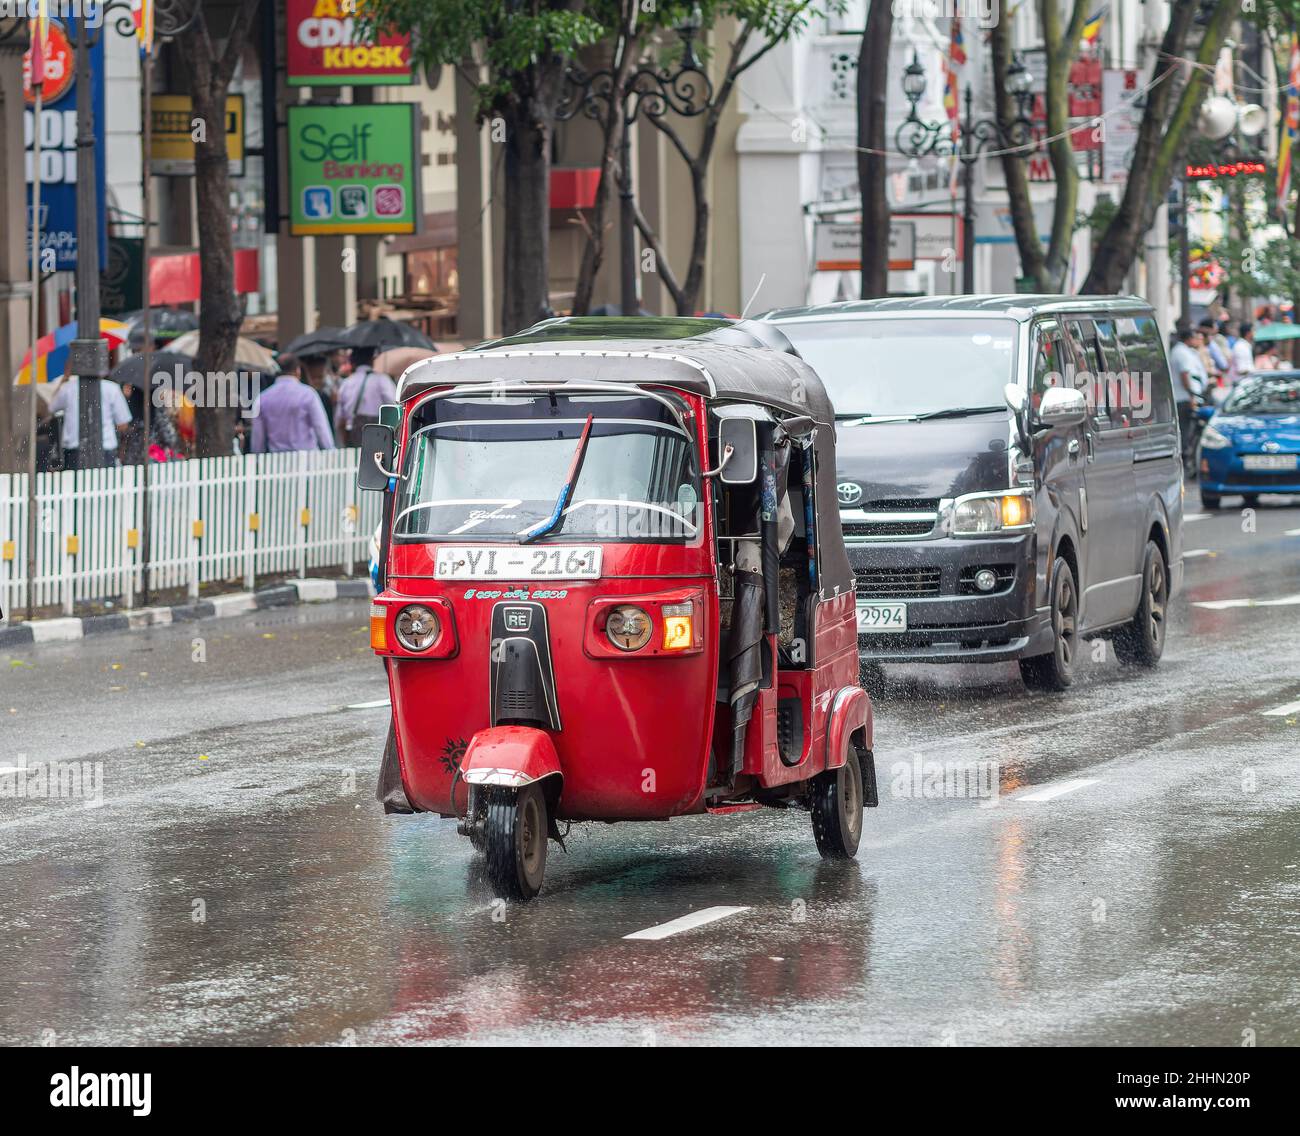 Auto rickshaw on a rainy day in Kandy, Sri Lanka. Stock Photo